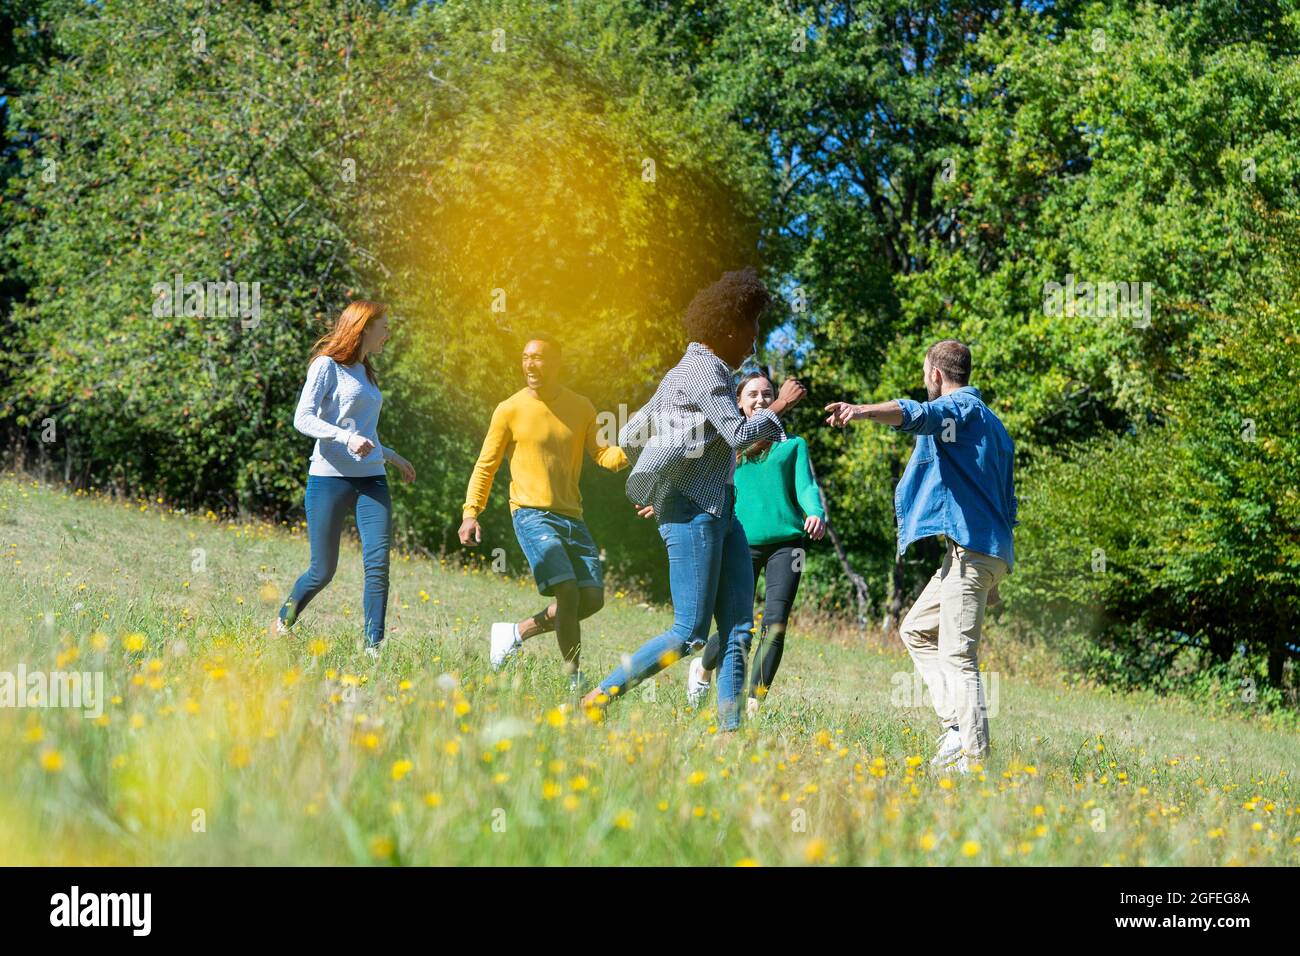 Glückliche junge Freunde, die Spaß haben, während sie im Park zusammen laufen Stockfoto